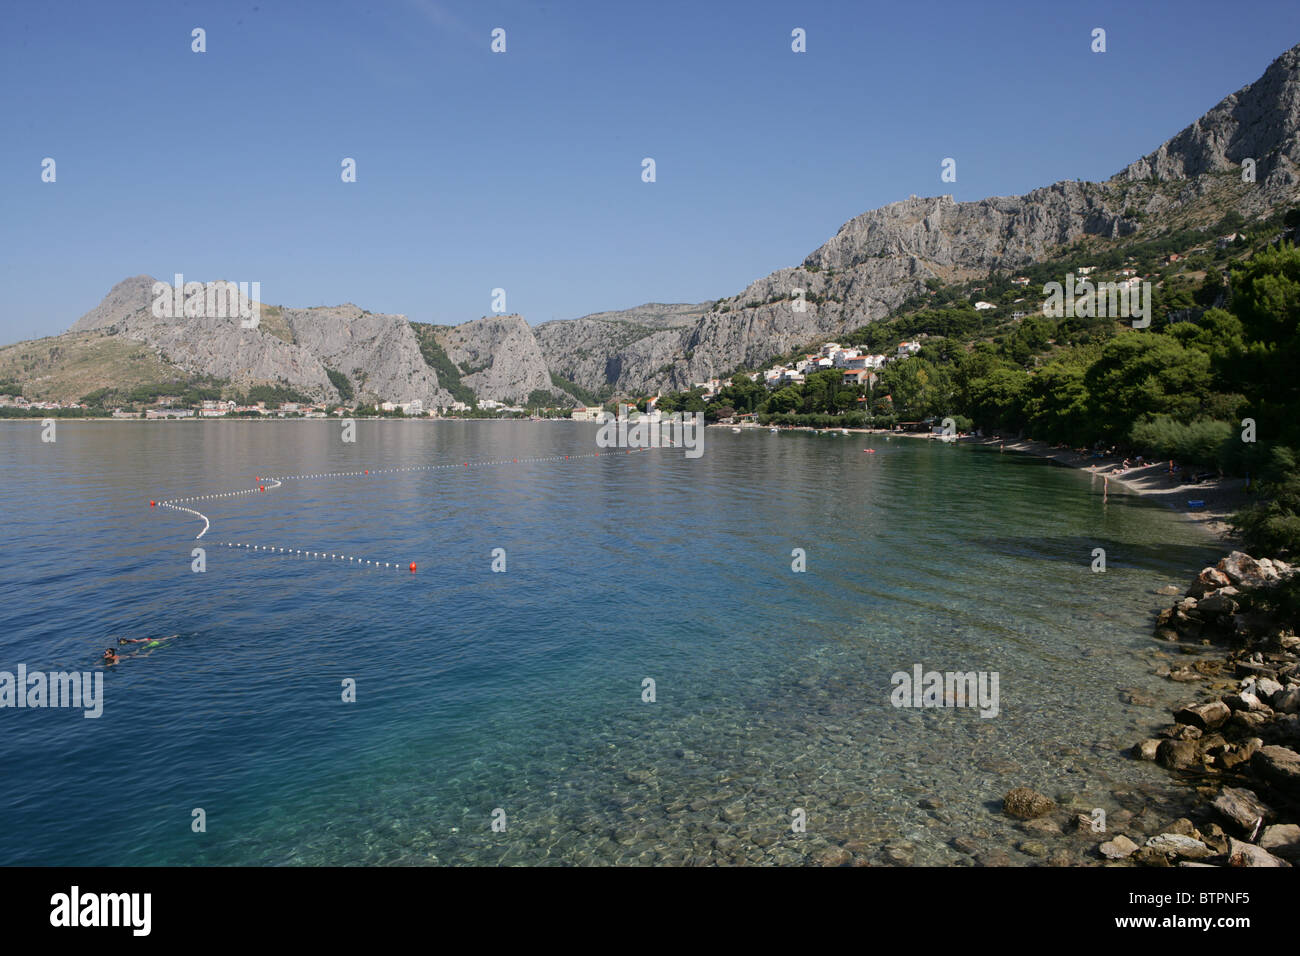 Les eaux claires de la mer Adriatique, près de la ville de Zadar, Croatie Banque D'Images